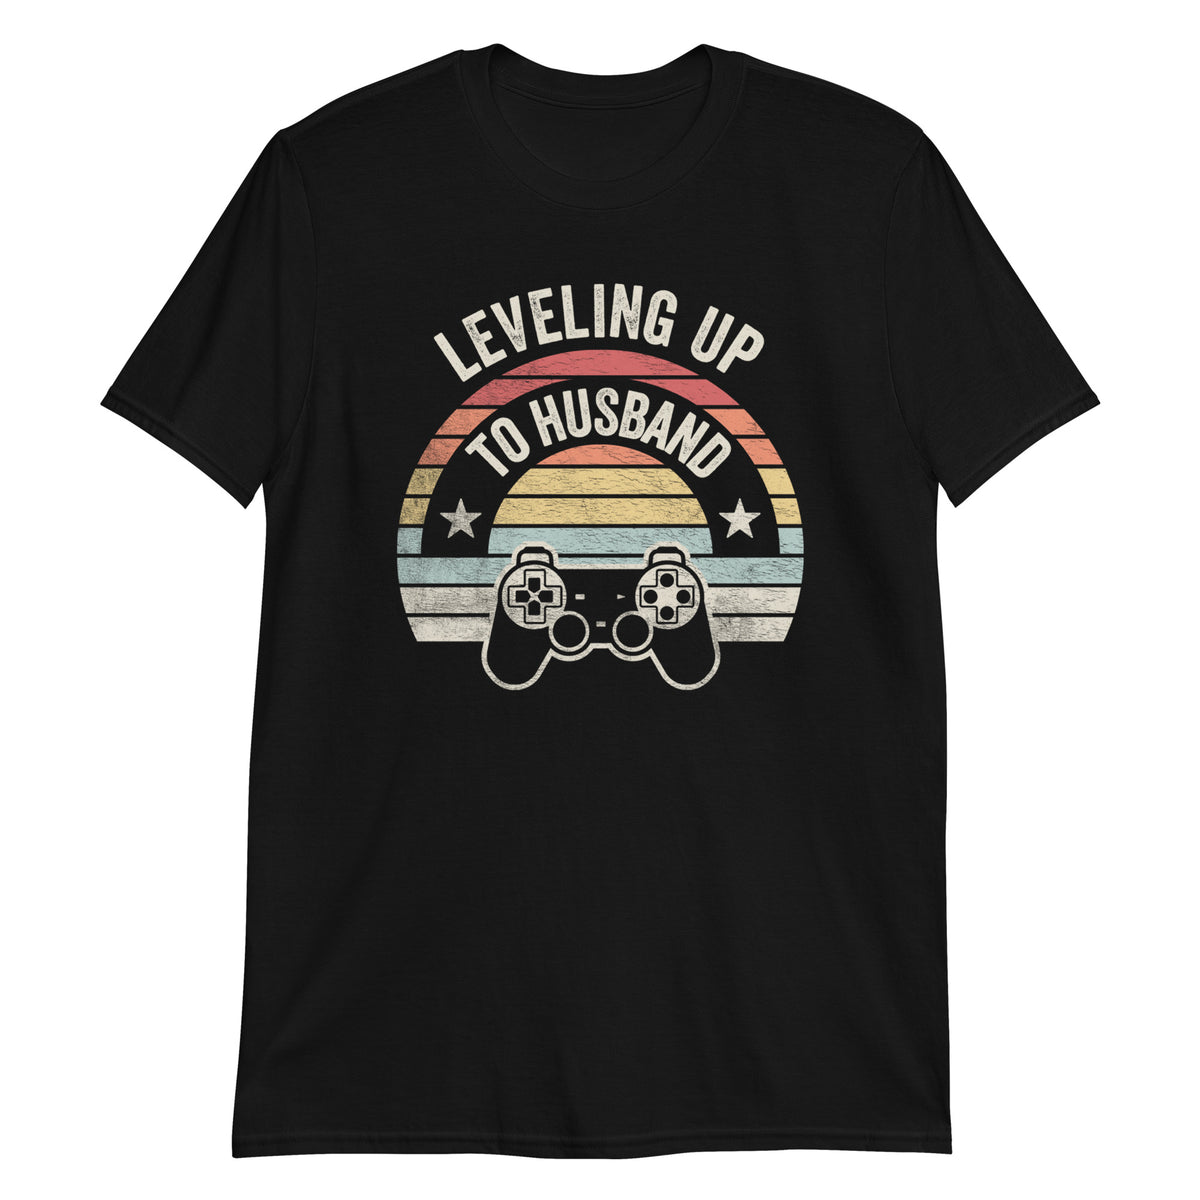 Leveling Uo To Husband T-Shirt